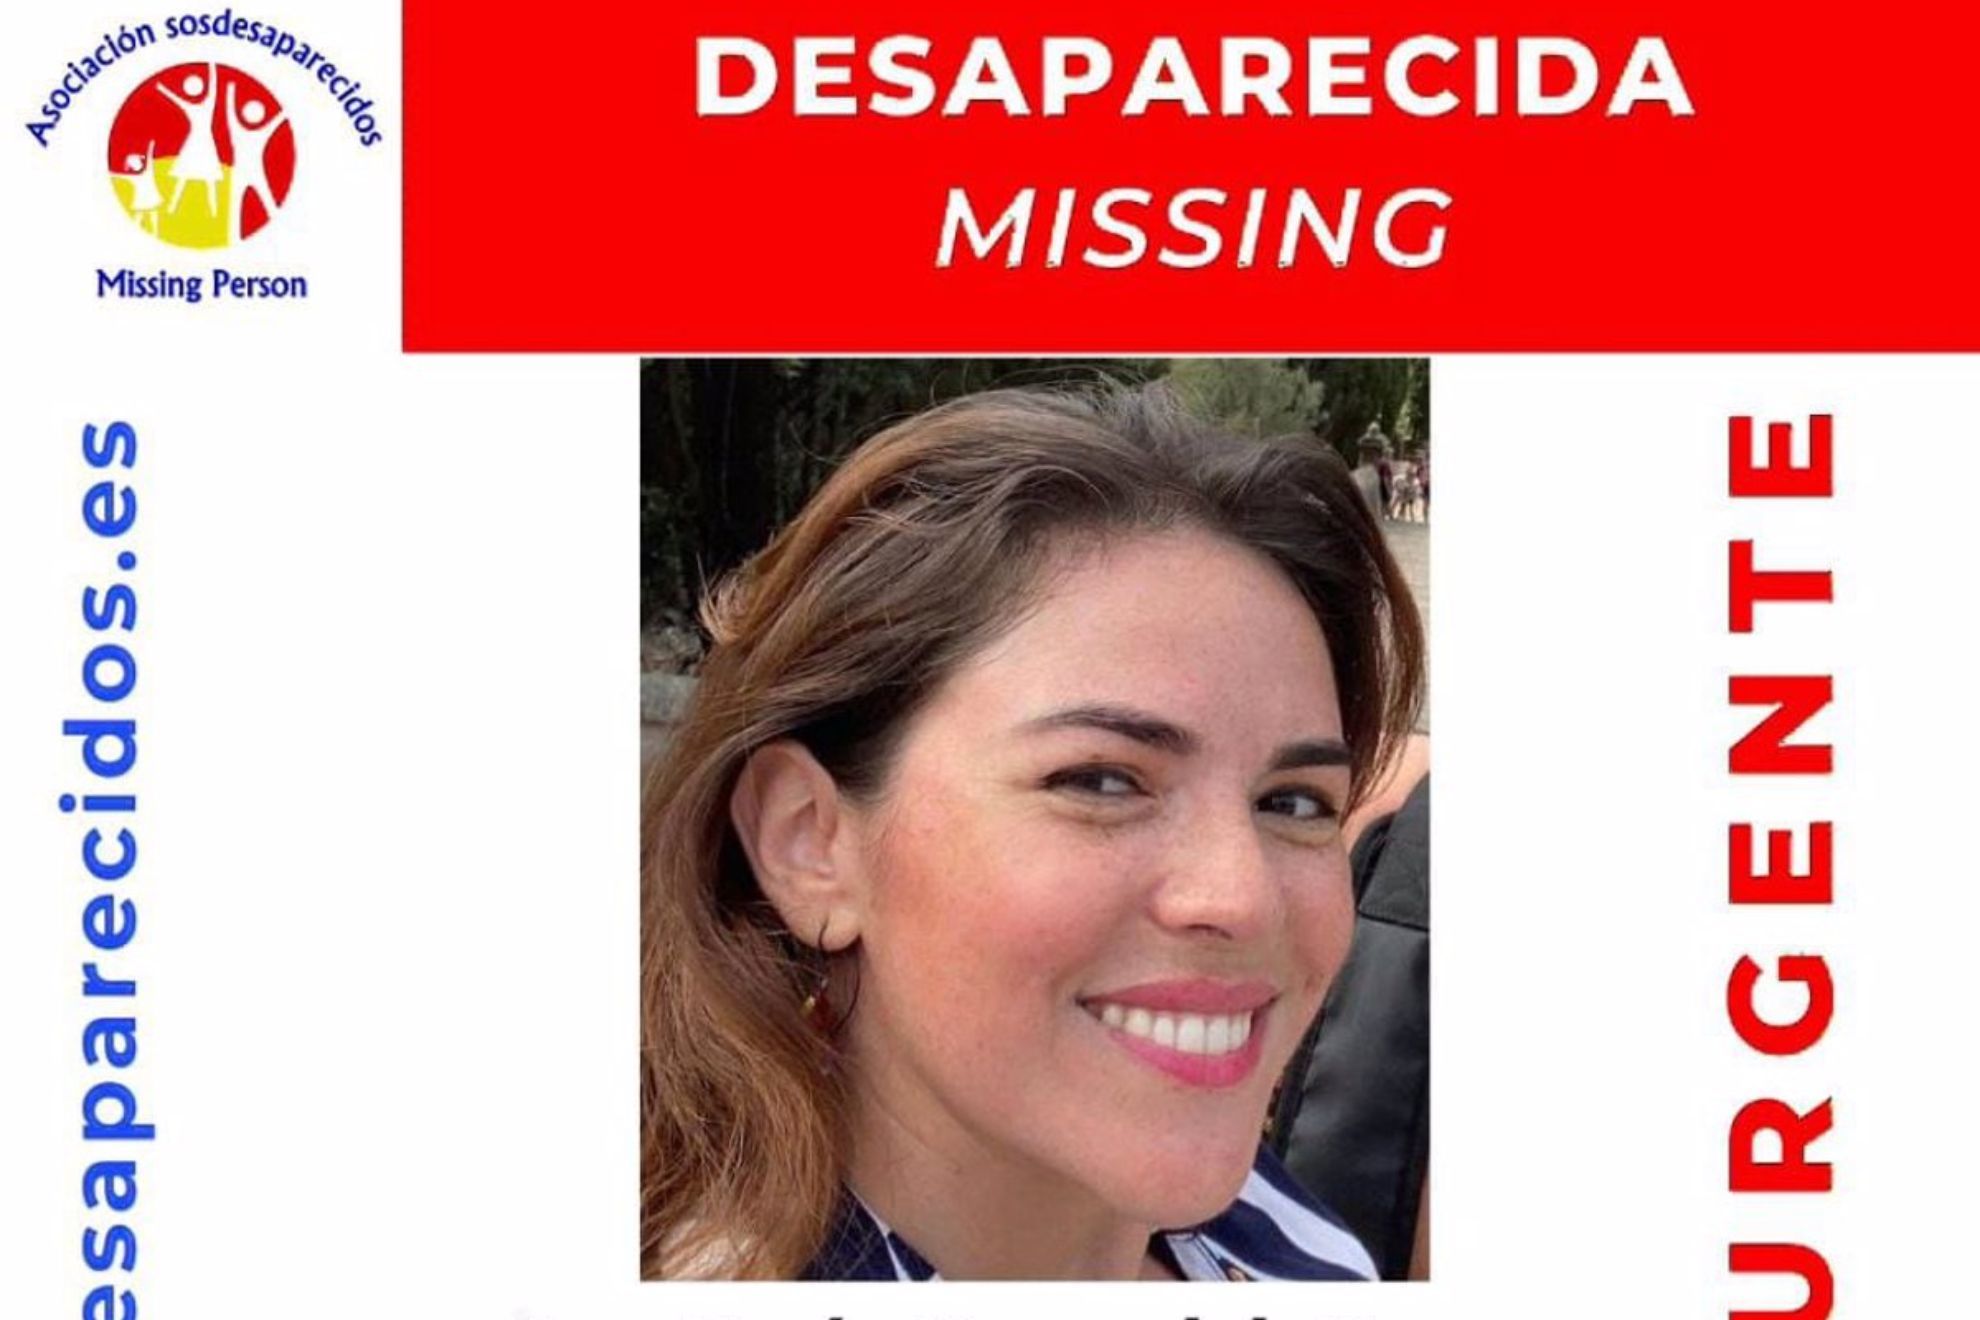 La inquietante desaparición de una estadounidense en Madrid que ha movilizado al FBI